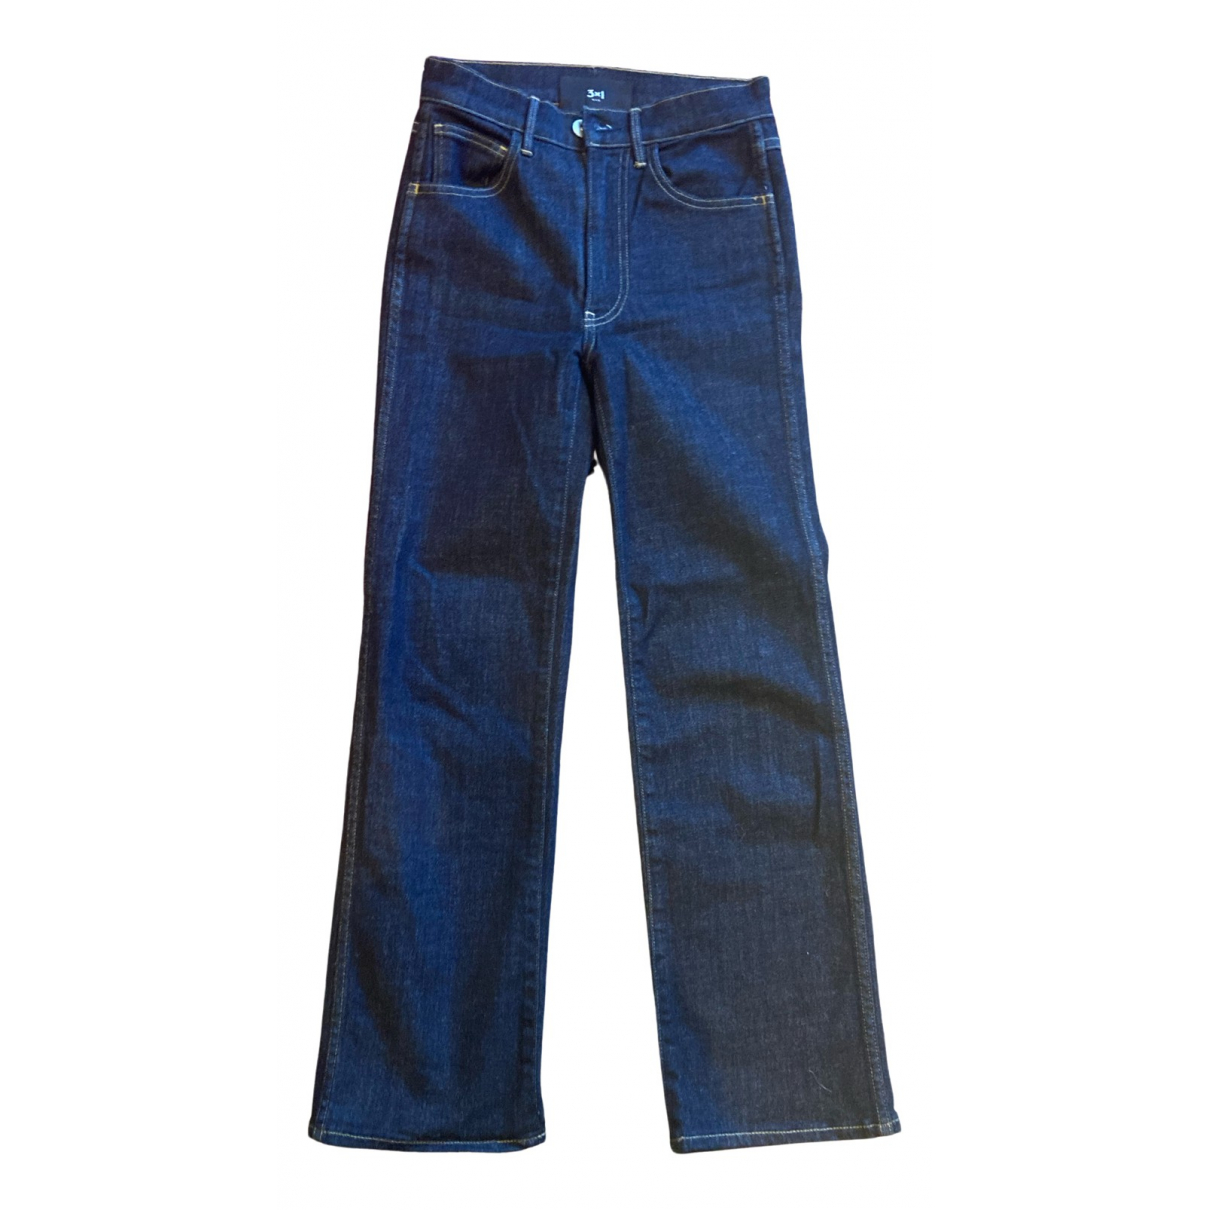 X1 Jeans - 3x1 - Modalova